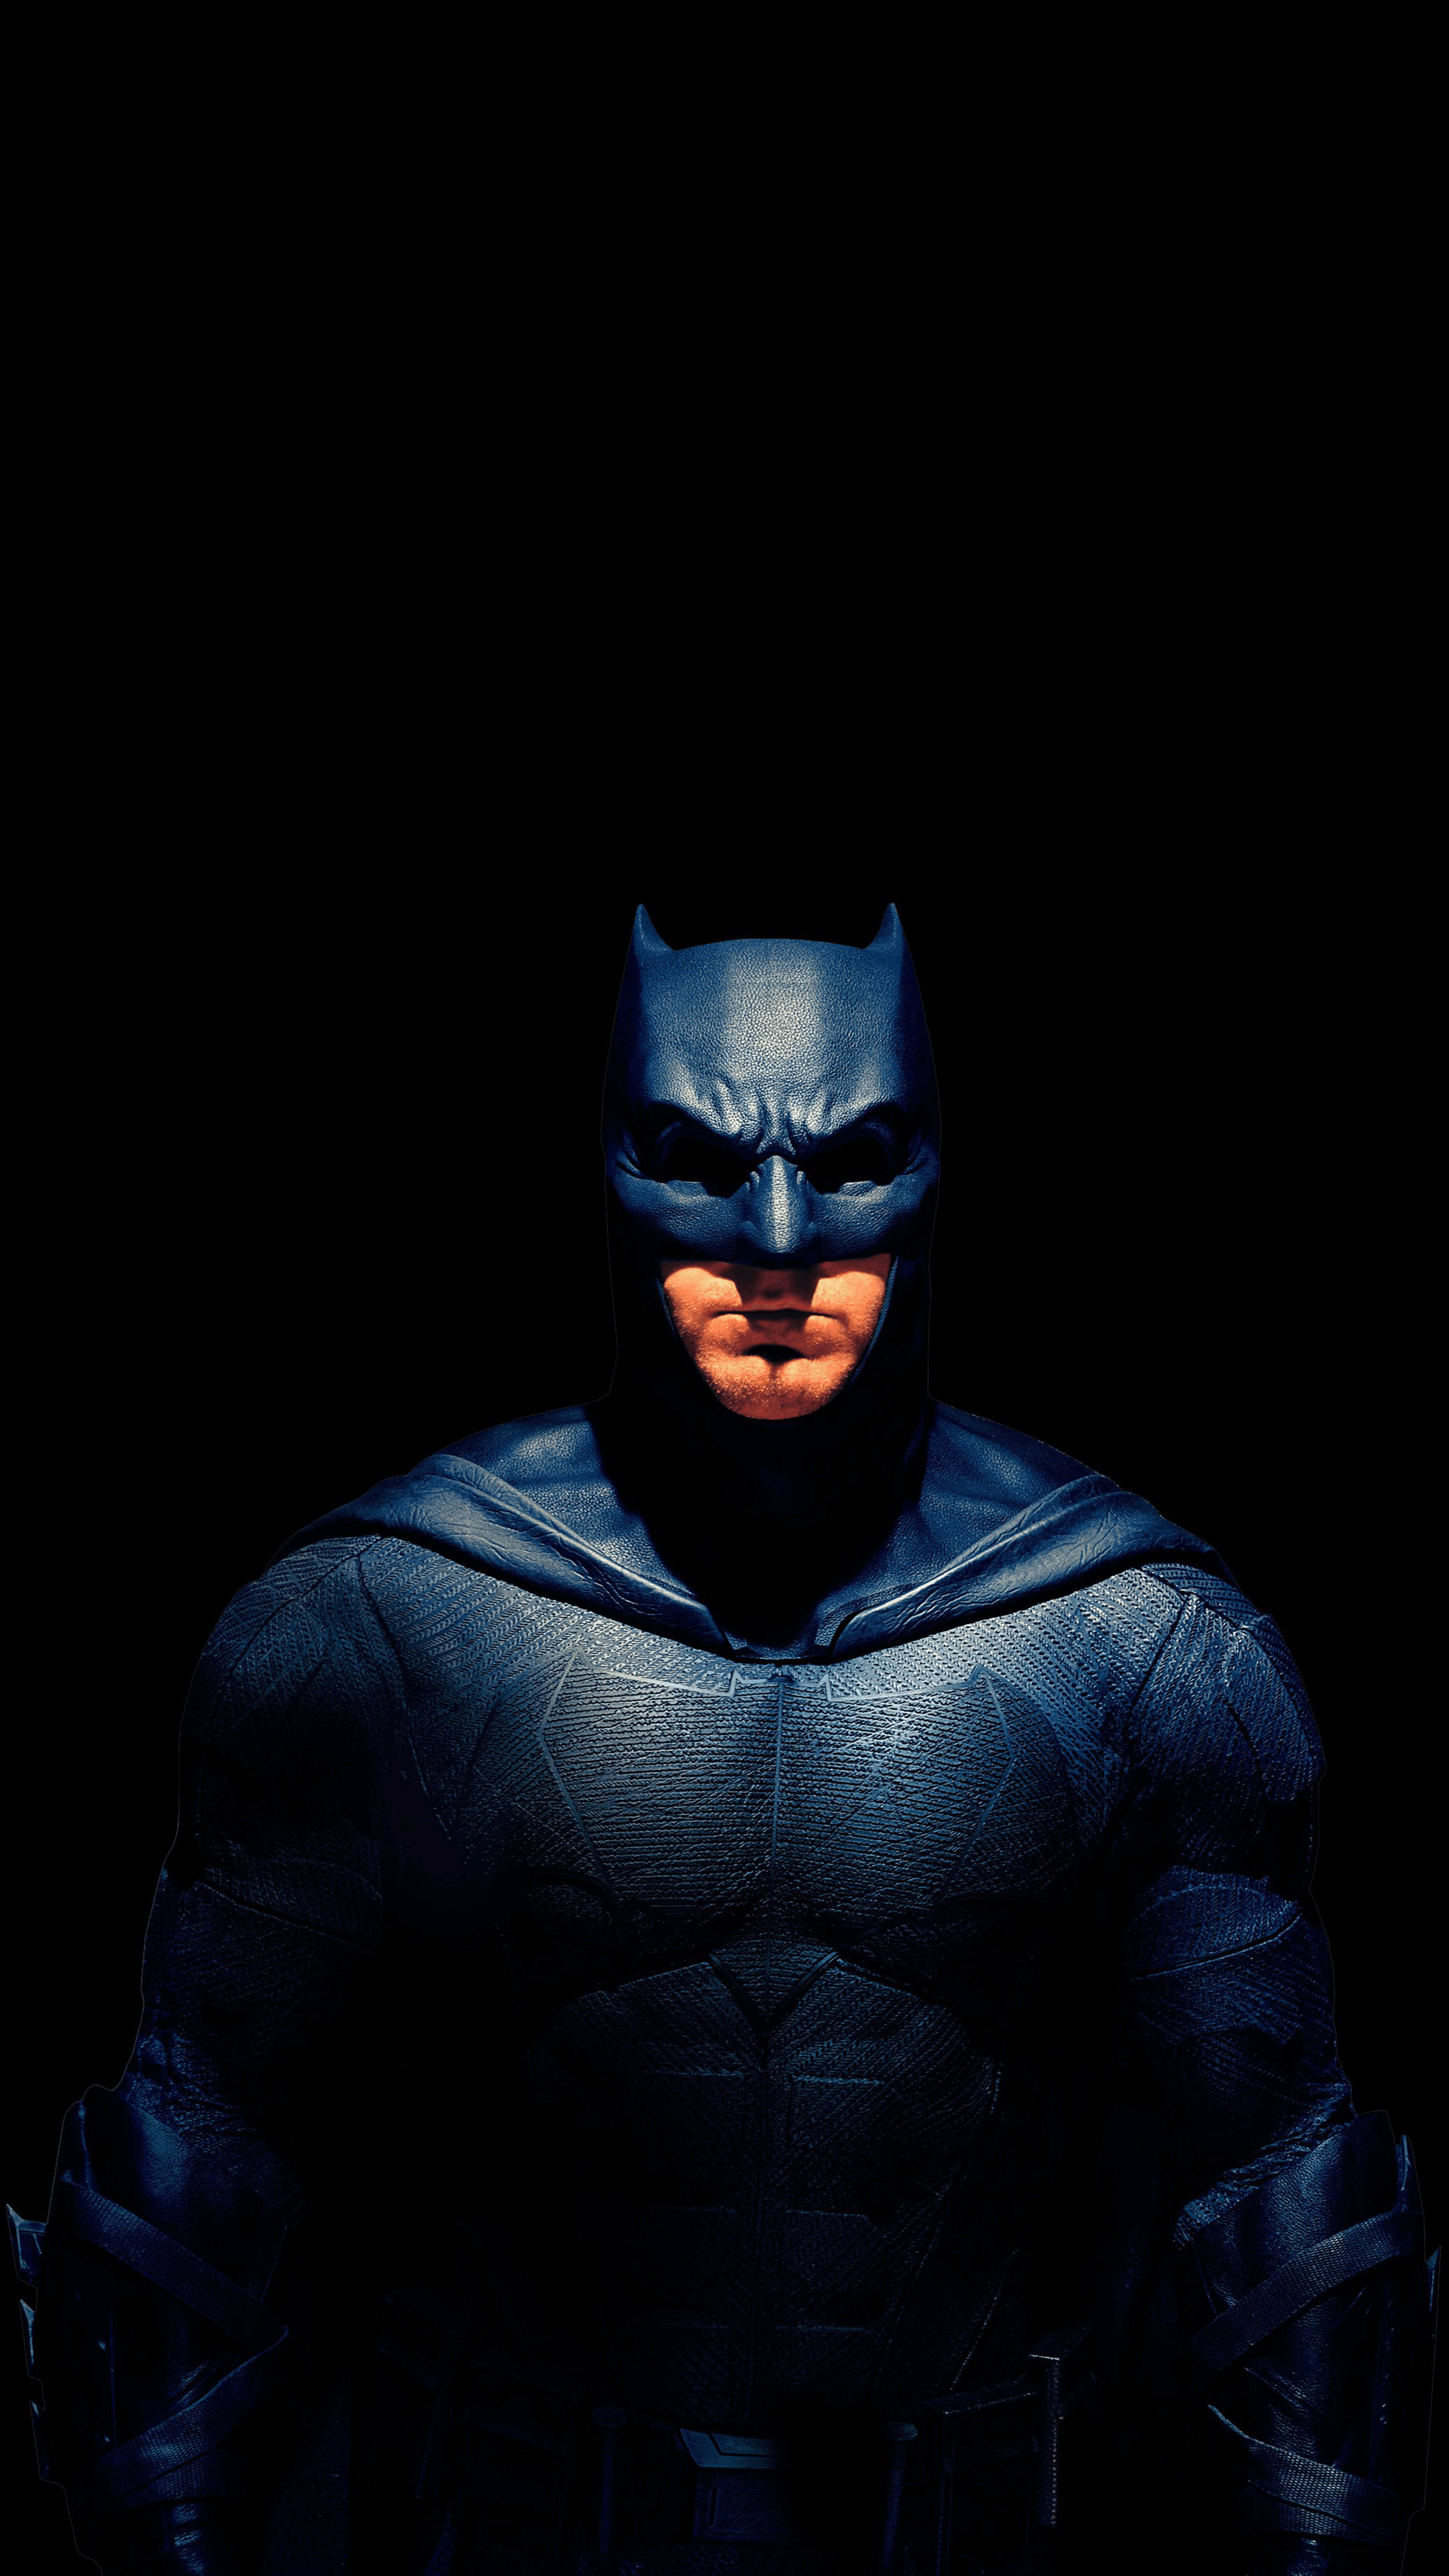 Hình nền Batman là một sự lựa chọn tuyệt vời để đem lại không gian làm việc hoặc giải trí của bạn sự độc đáo, thanh lịch và mạnh mẽ. Hãy xem ngay hình ảnh này để cảm nhận được phong cách đặc biệt của người hùng tối thượng này.